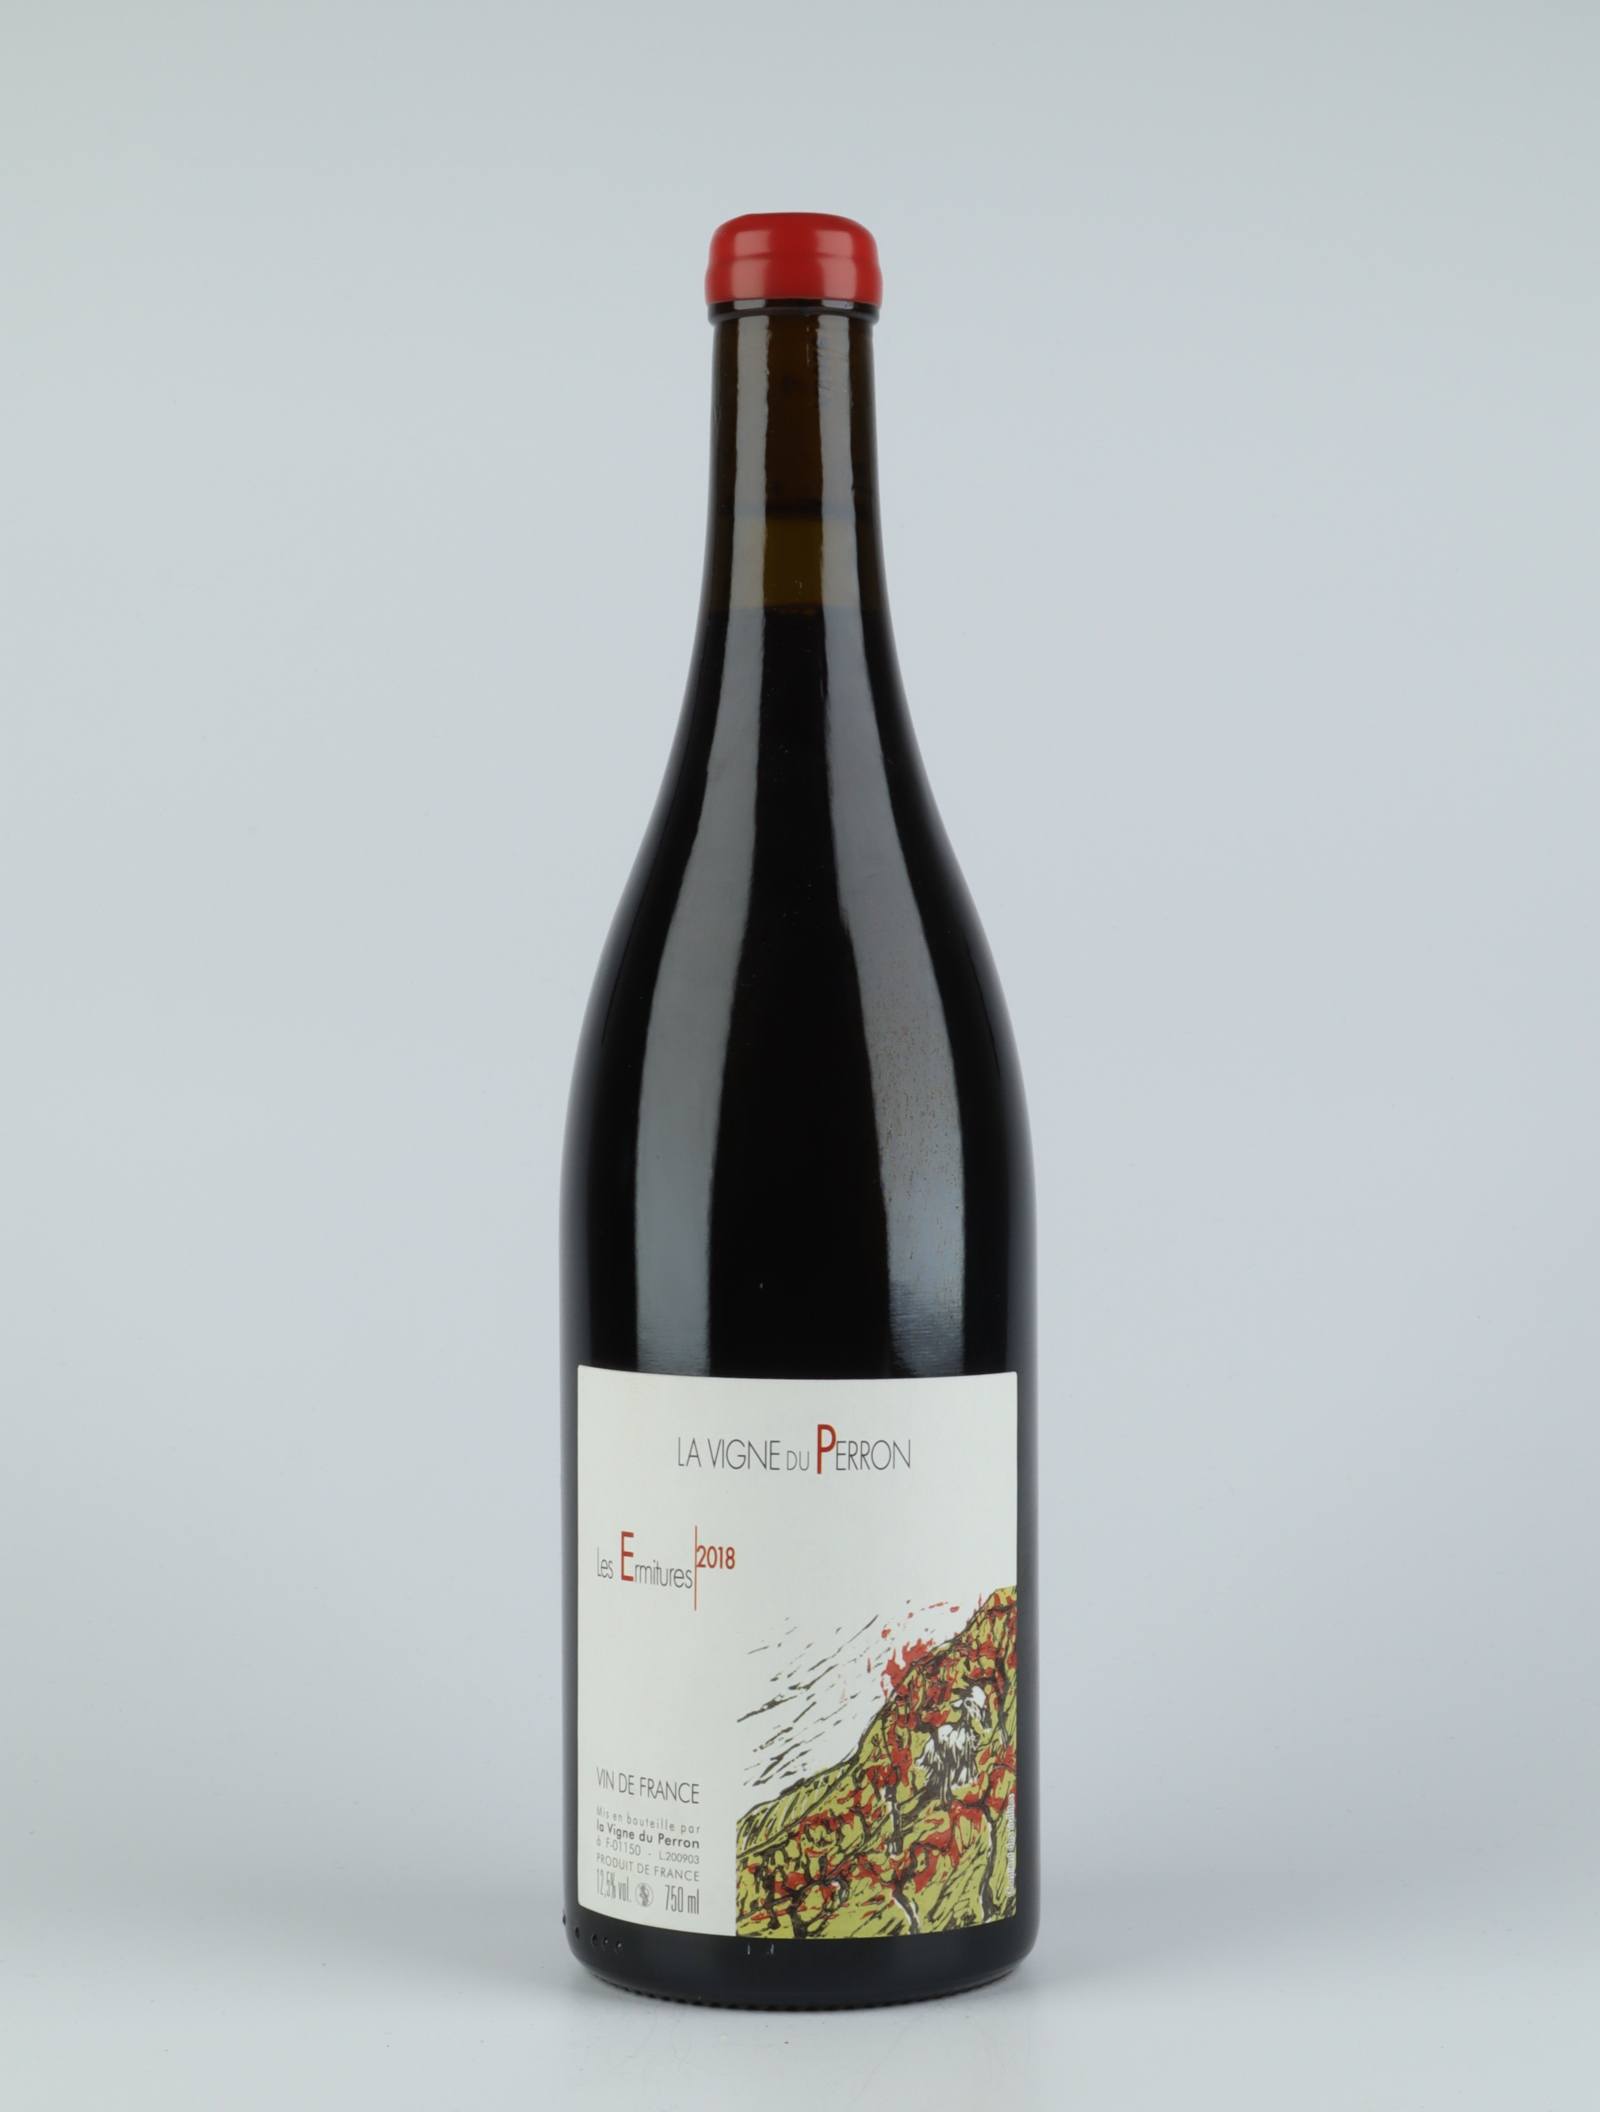 En flaske 2018 Ermitures Rødvin fra Domaine du Perron, Bugey i Frankrig